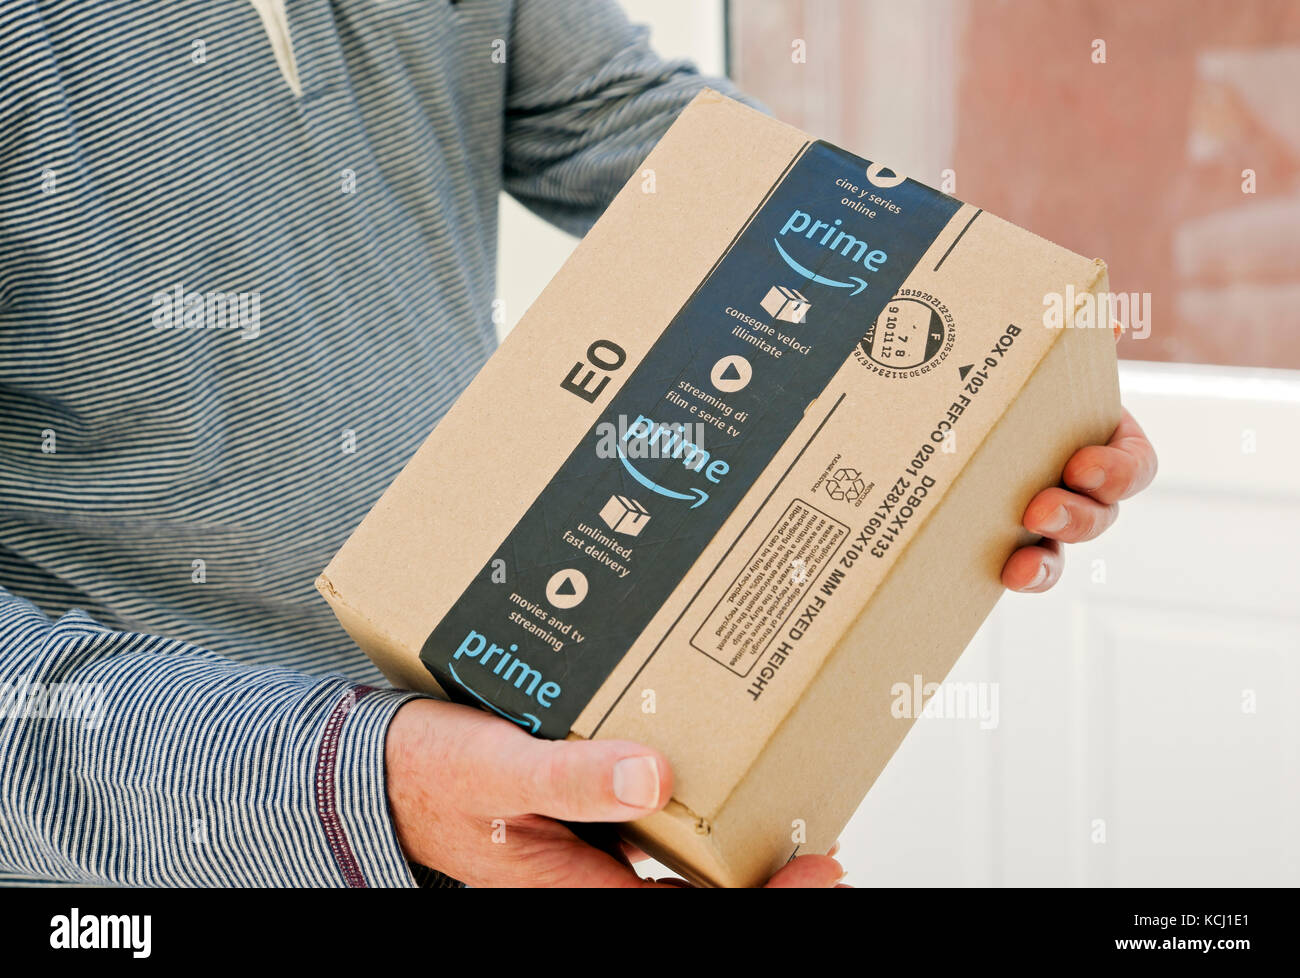 Gros plan de la personne homme holding livrant une Amazon premier boîte colis colis home Internet shopping livraison Angleterre Royaume-Uni Grande-Bretagne Banque D'Images